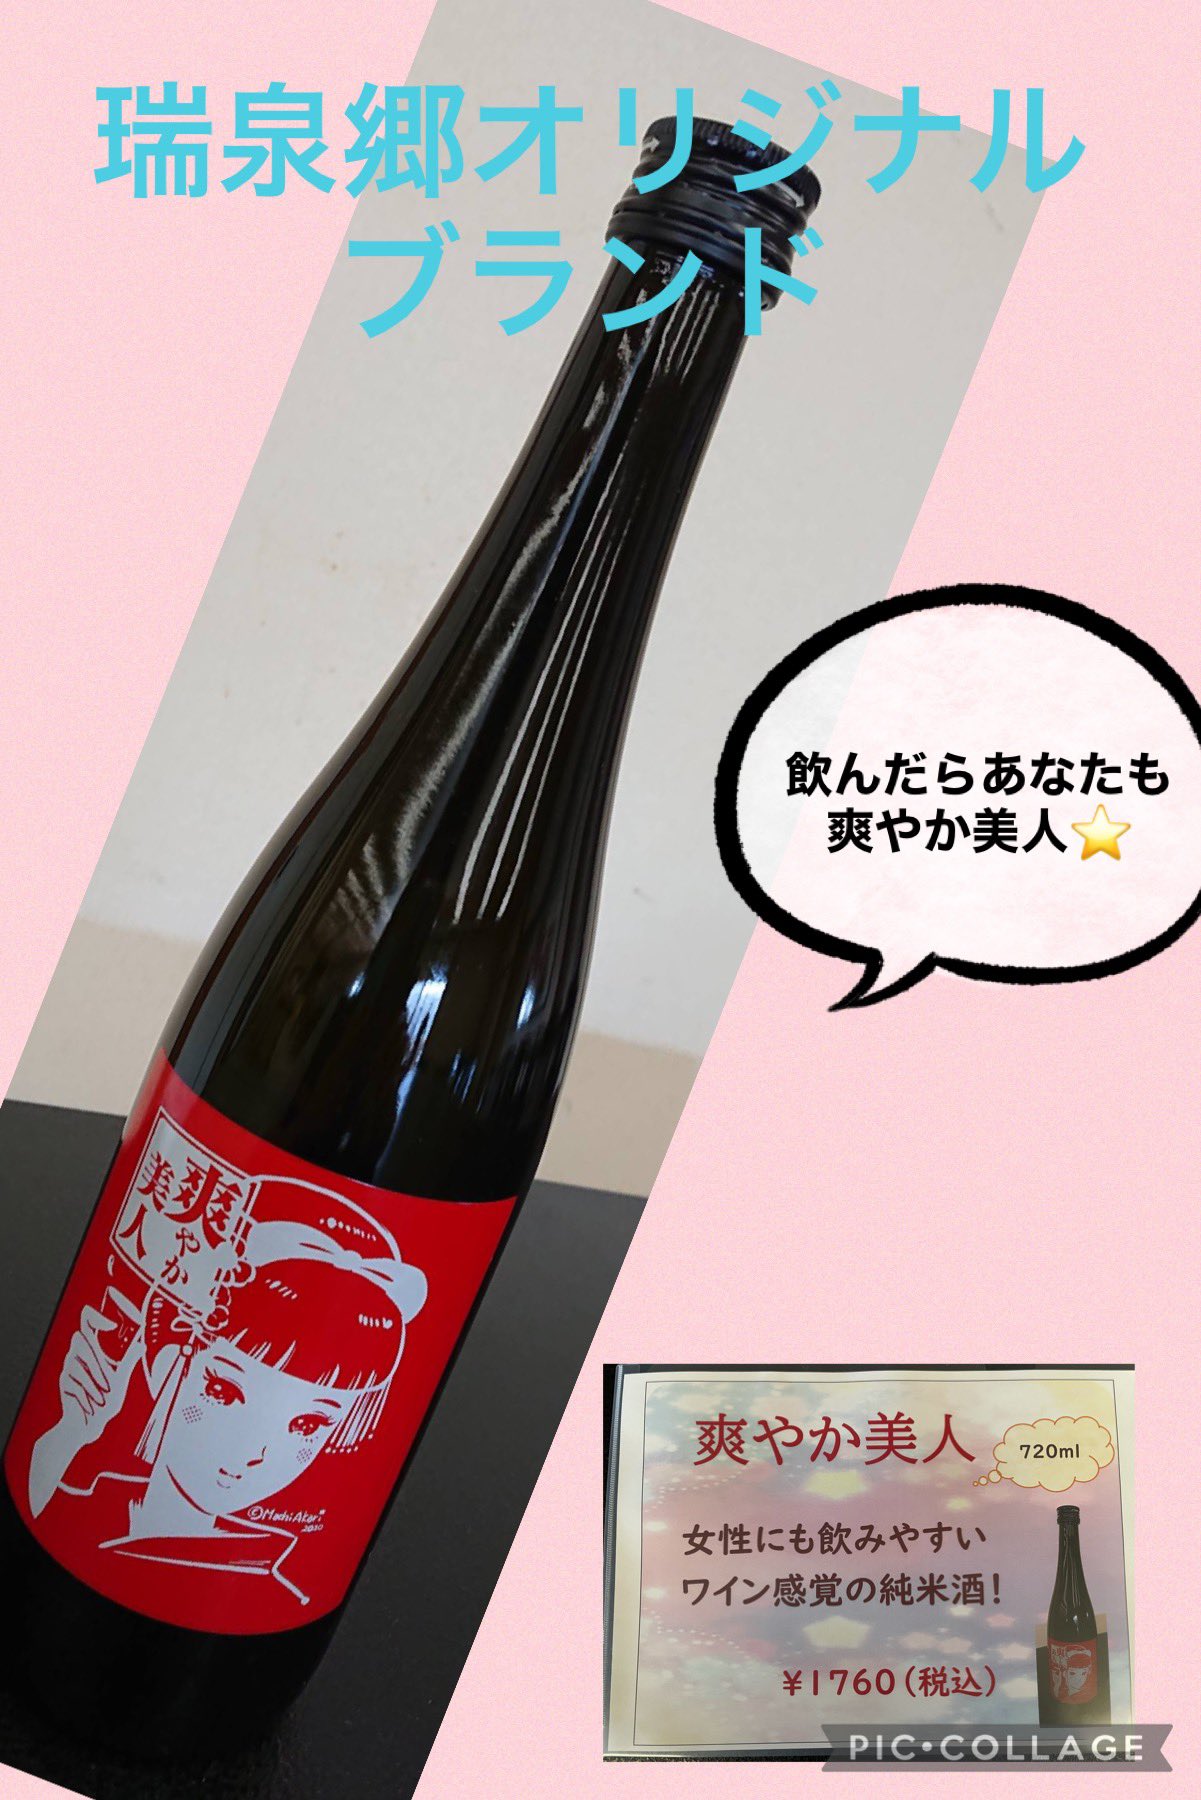 瑞泉郷オリジナルの日本酒です！飲んだらあなたも「爽やか美人」♪